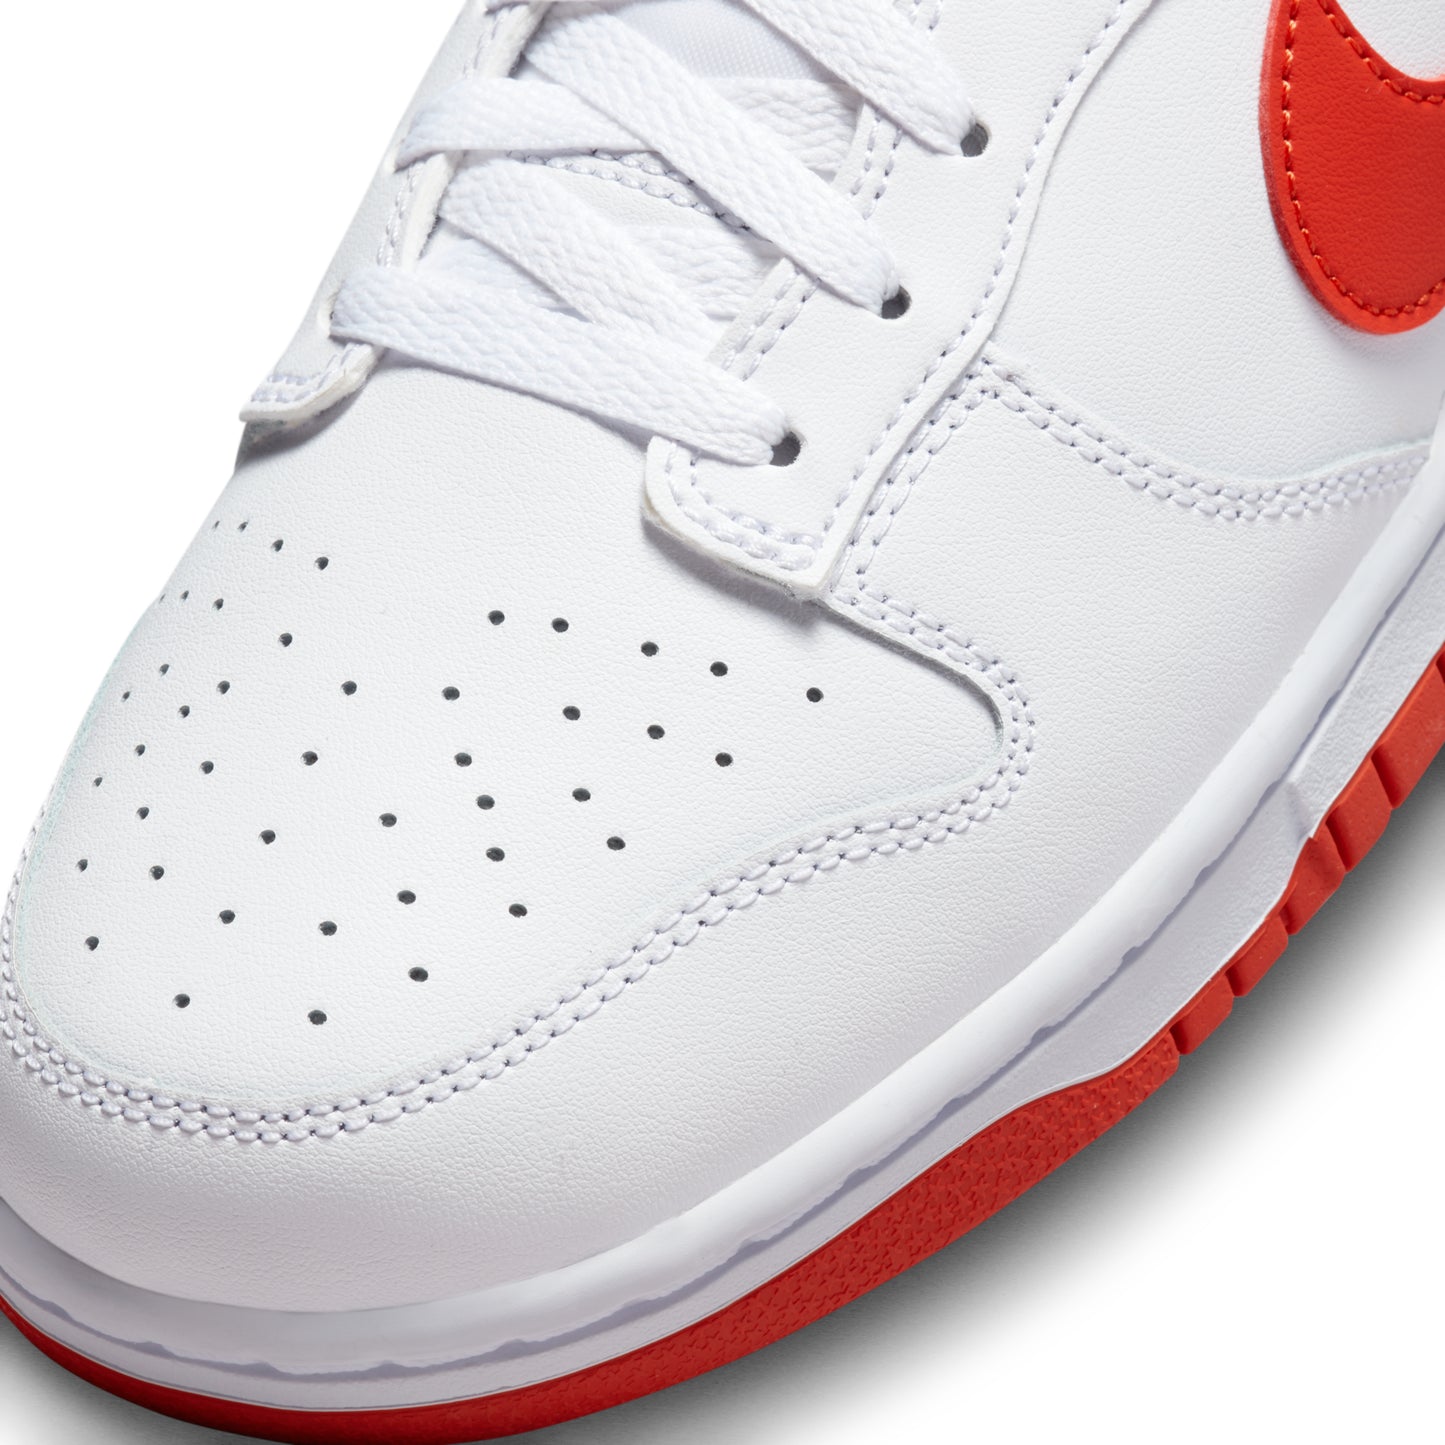 Nike Dunk Retro White Picante Red